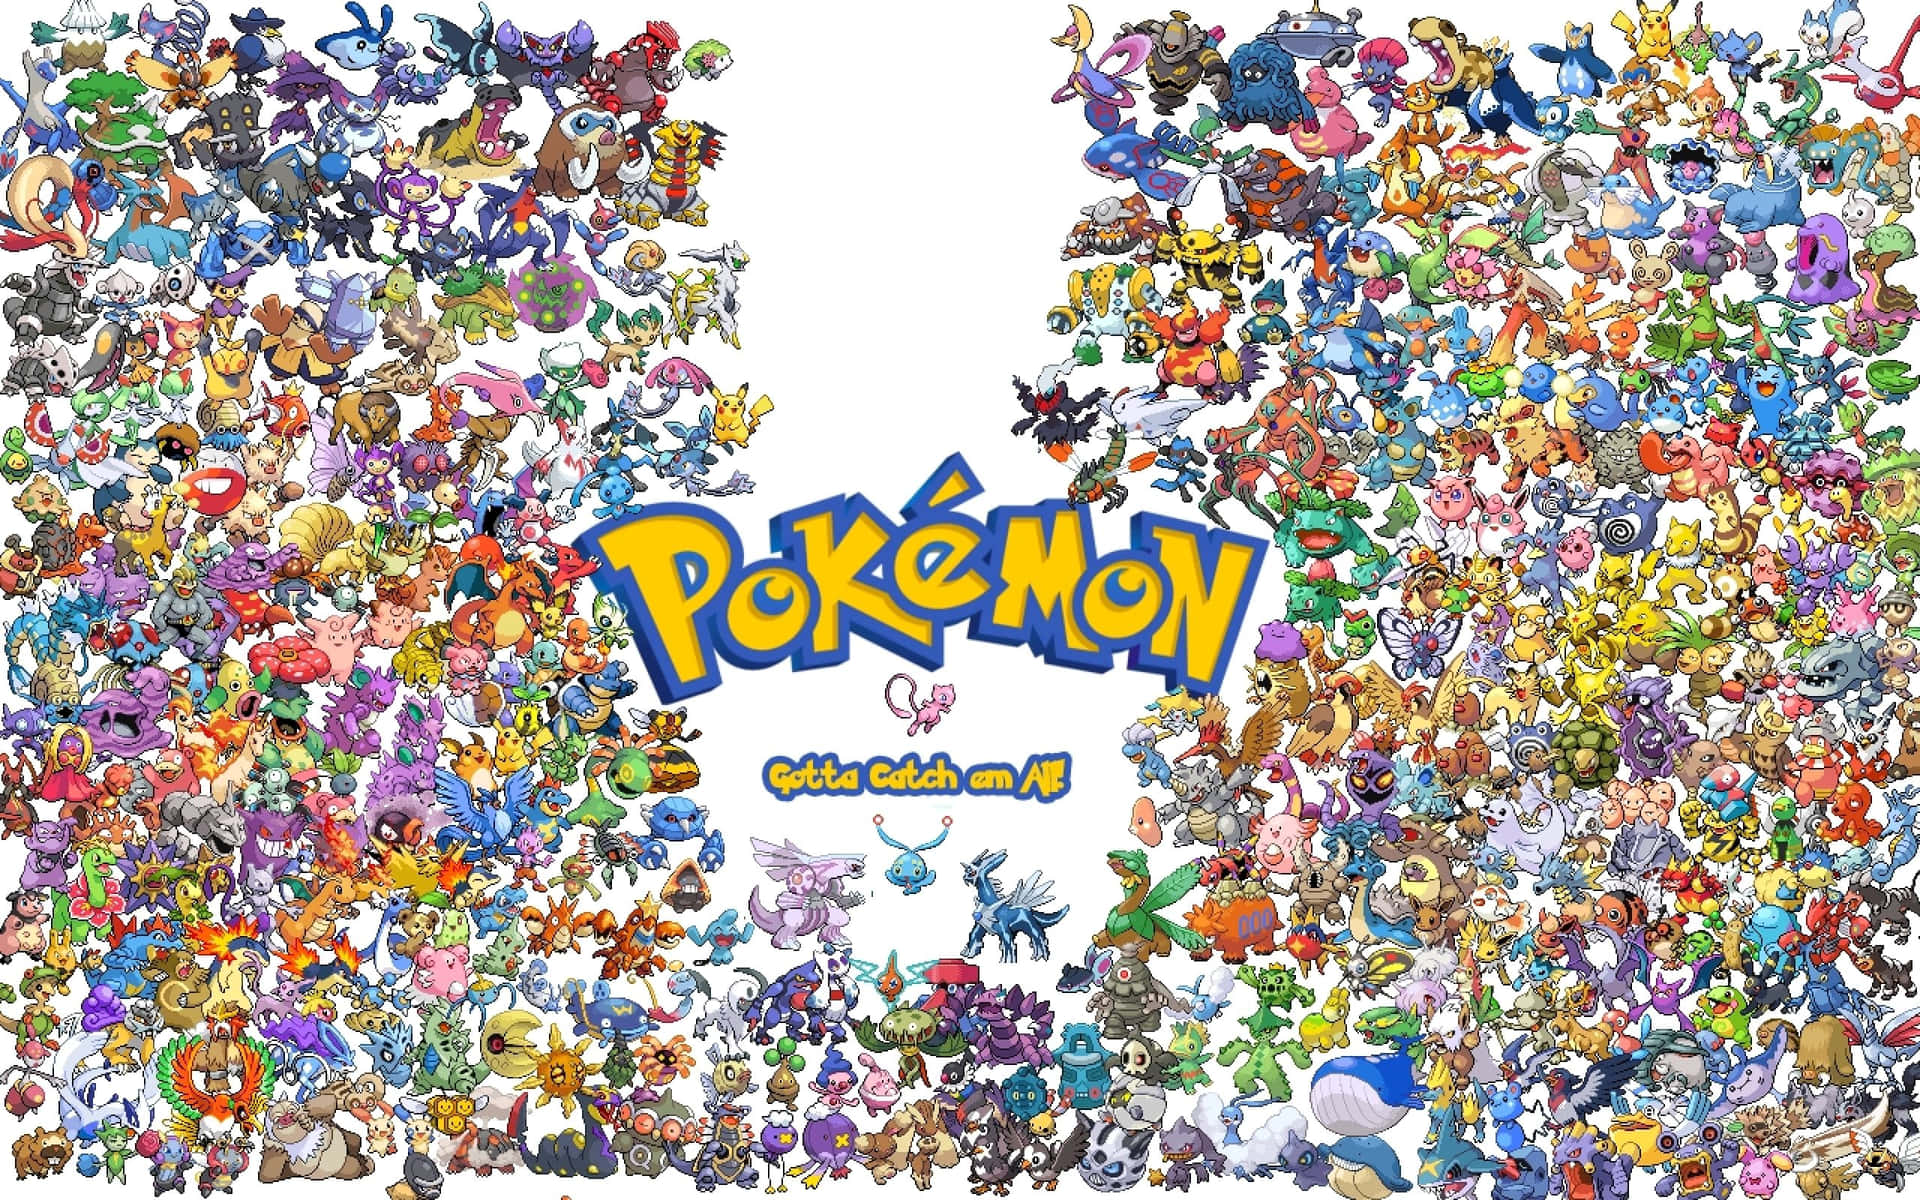 Alle dine yndlings Pokémon i én og samme placering!